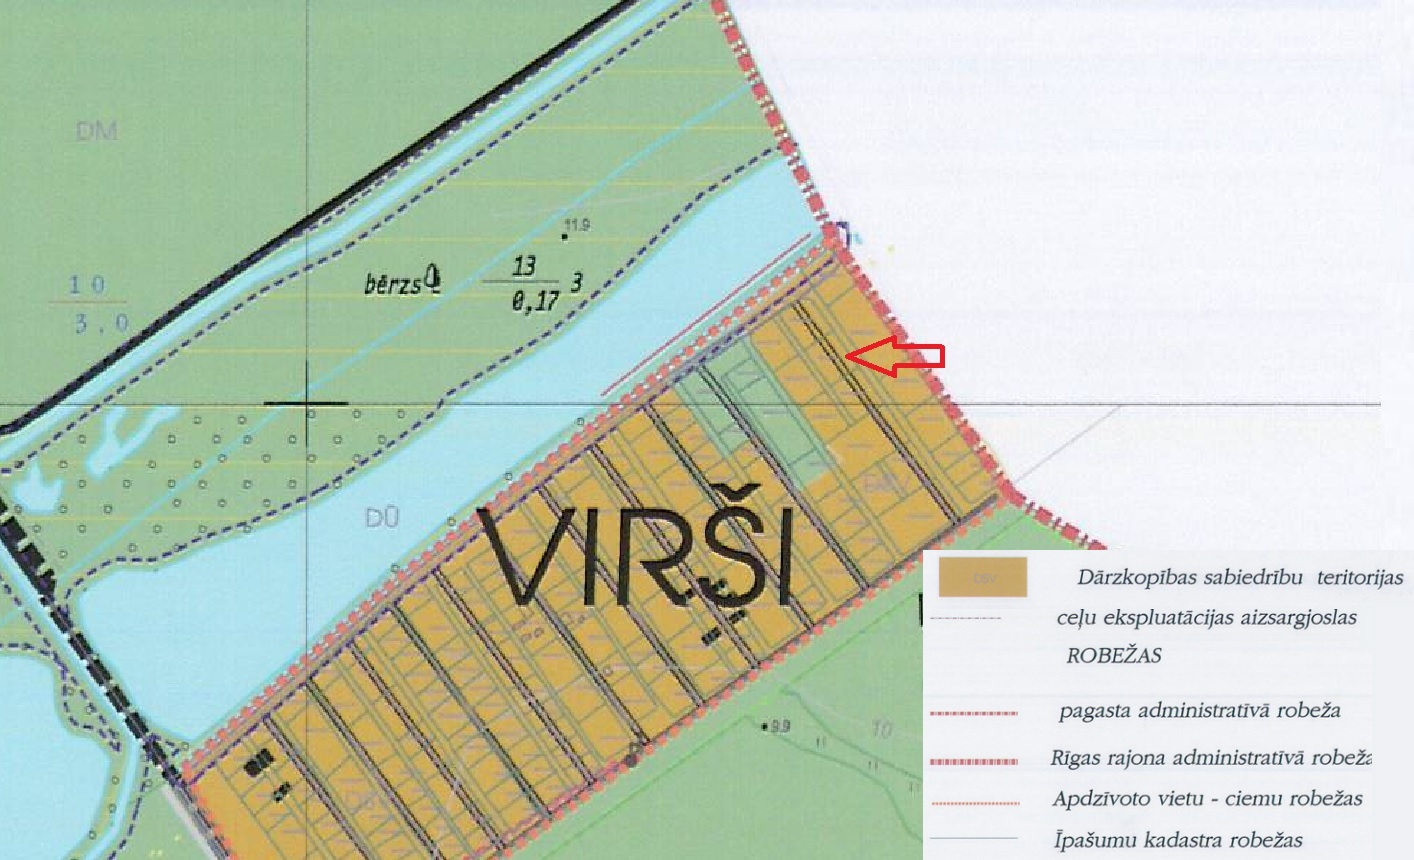 Продают земельный участок, Virši - Изображение 1